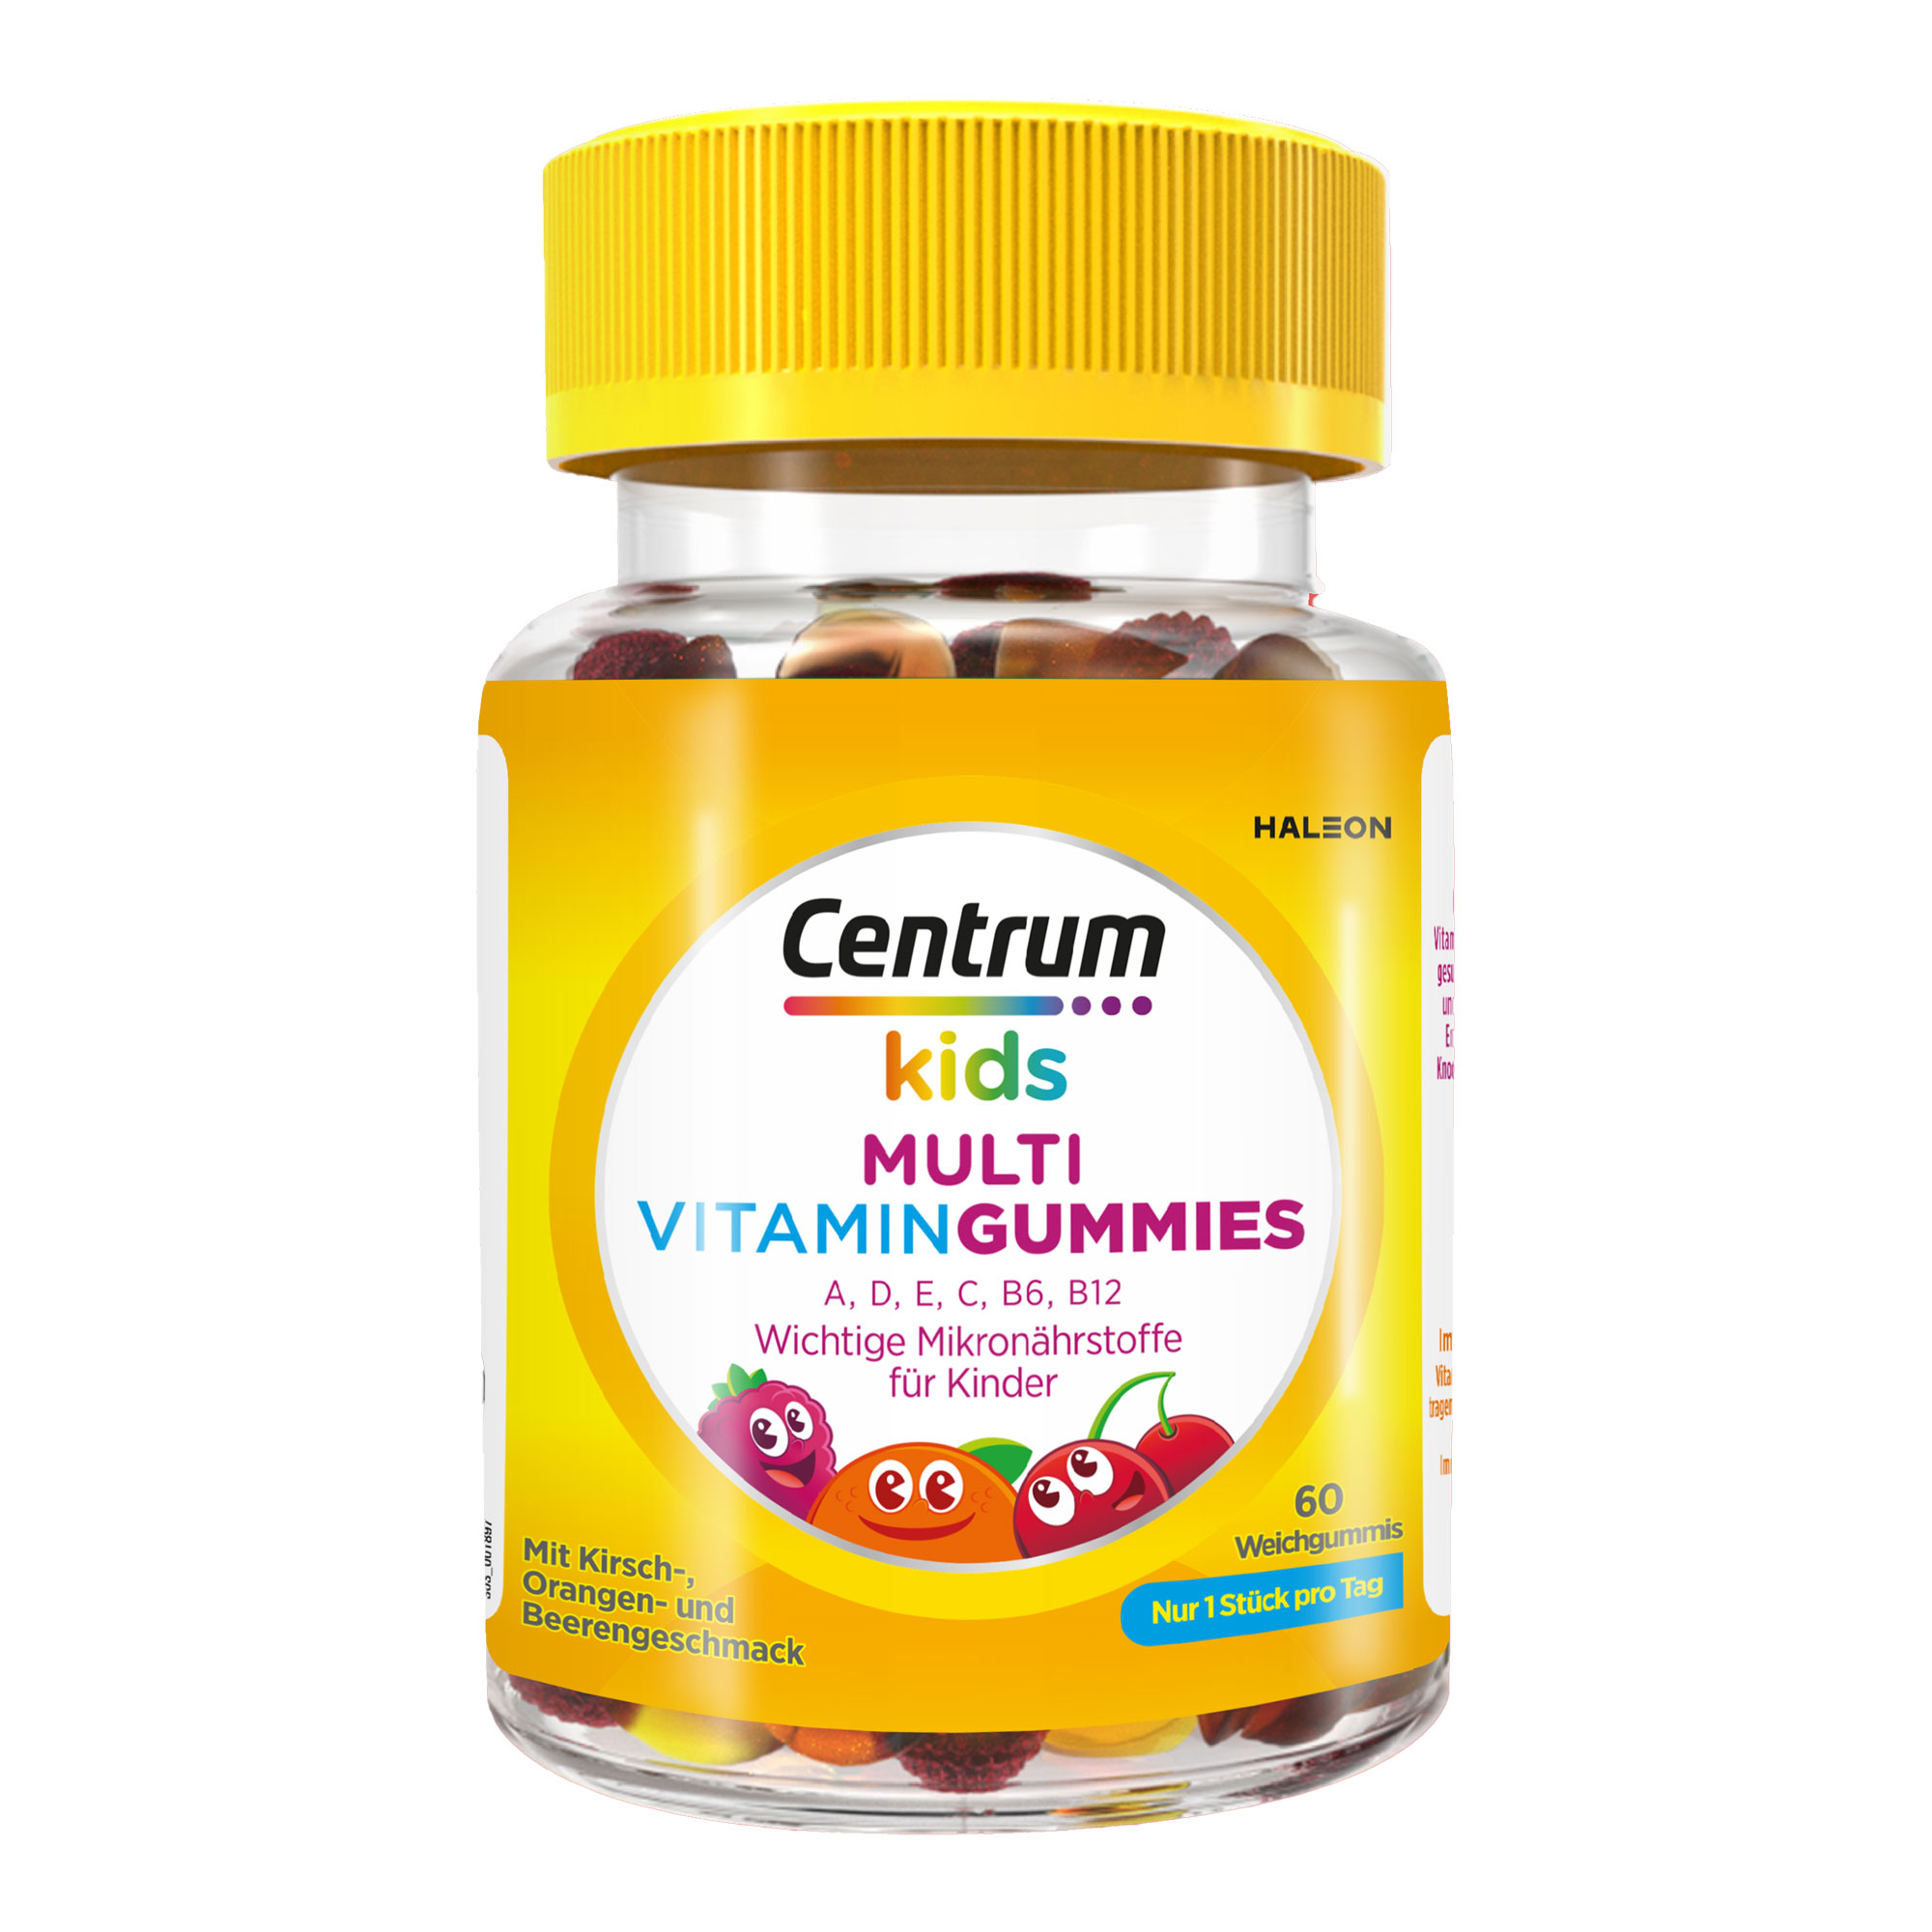 Nahrungsergänzungsmittel mit 8 Vitaminen und 2 essentiellen Mineralstoffen in Form von Gummibärchen. Für Kinder ab 4 Jahren. Mit Kirsch-, Orangen- und Beerengeschmack.